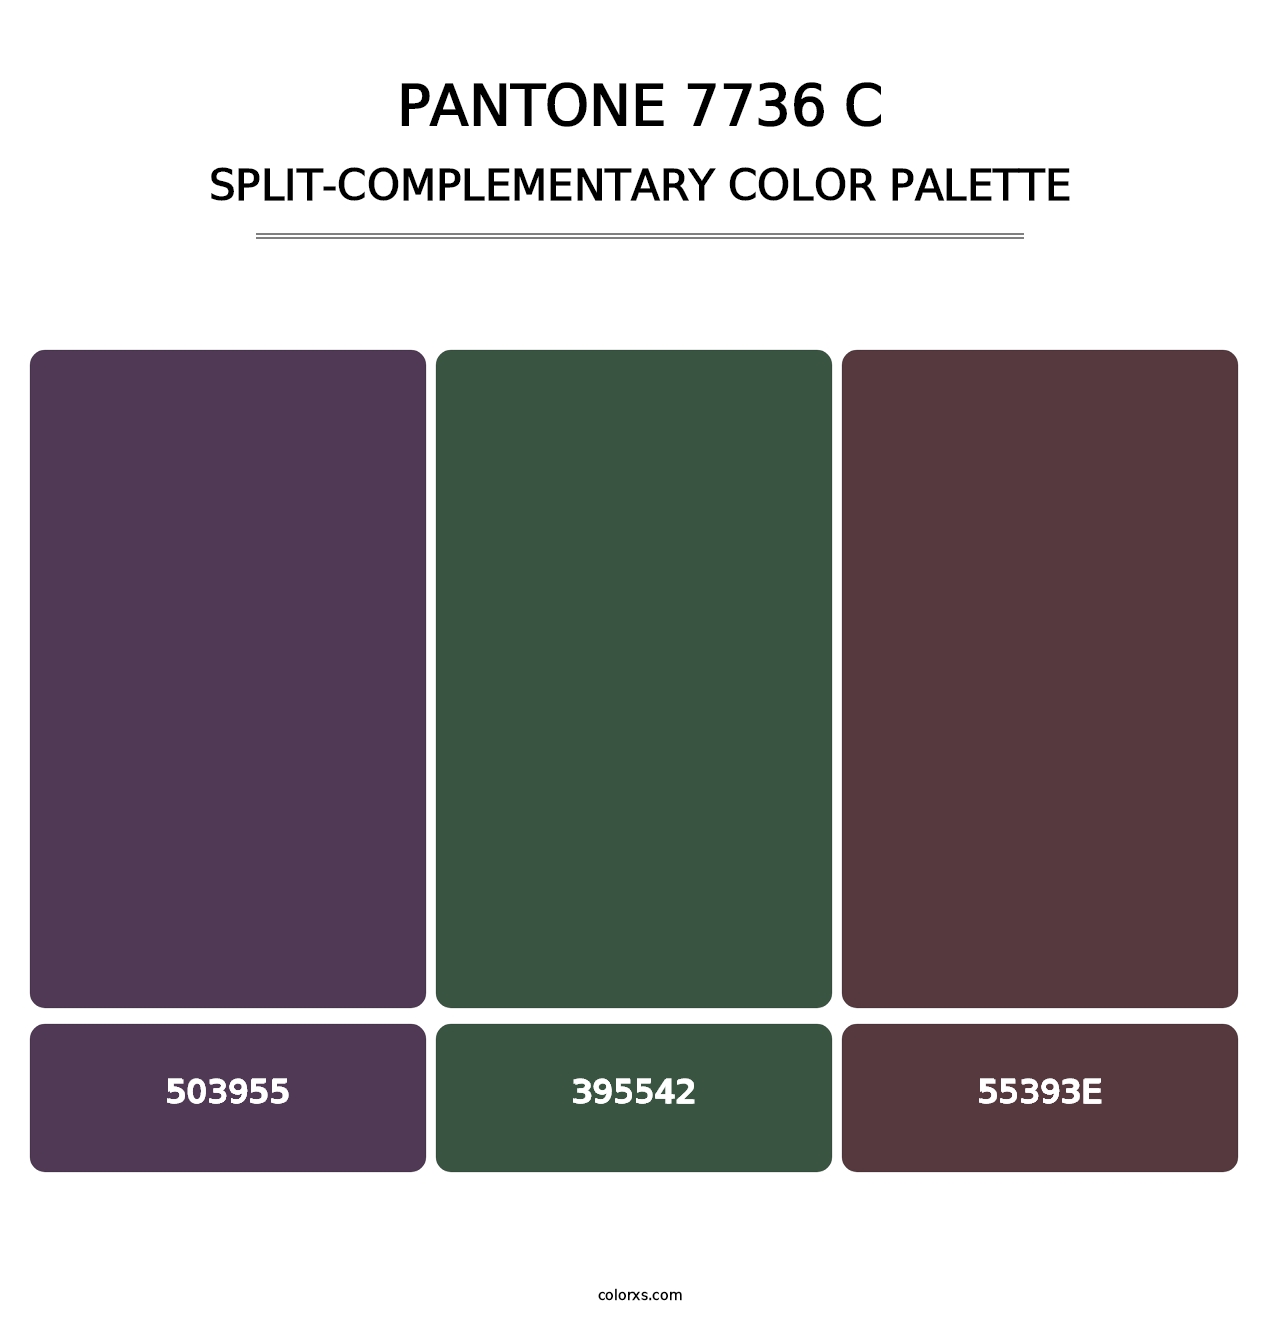 PANTONE 7736 C - Split-Complementary Color Palette